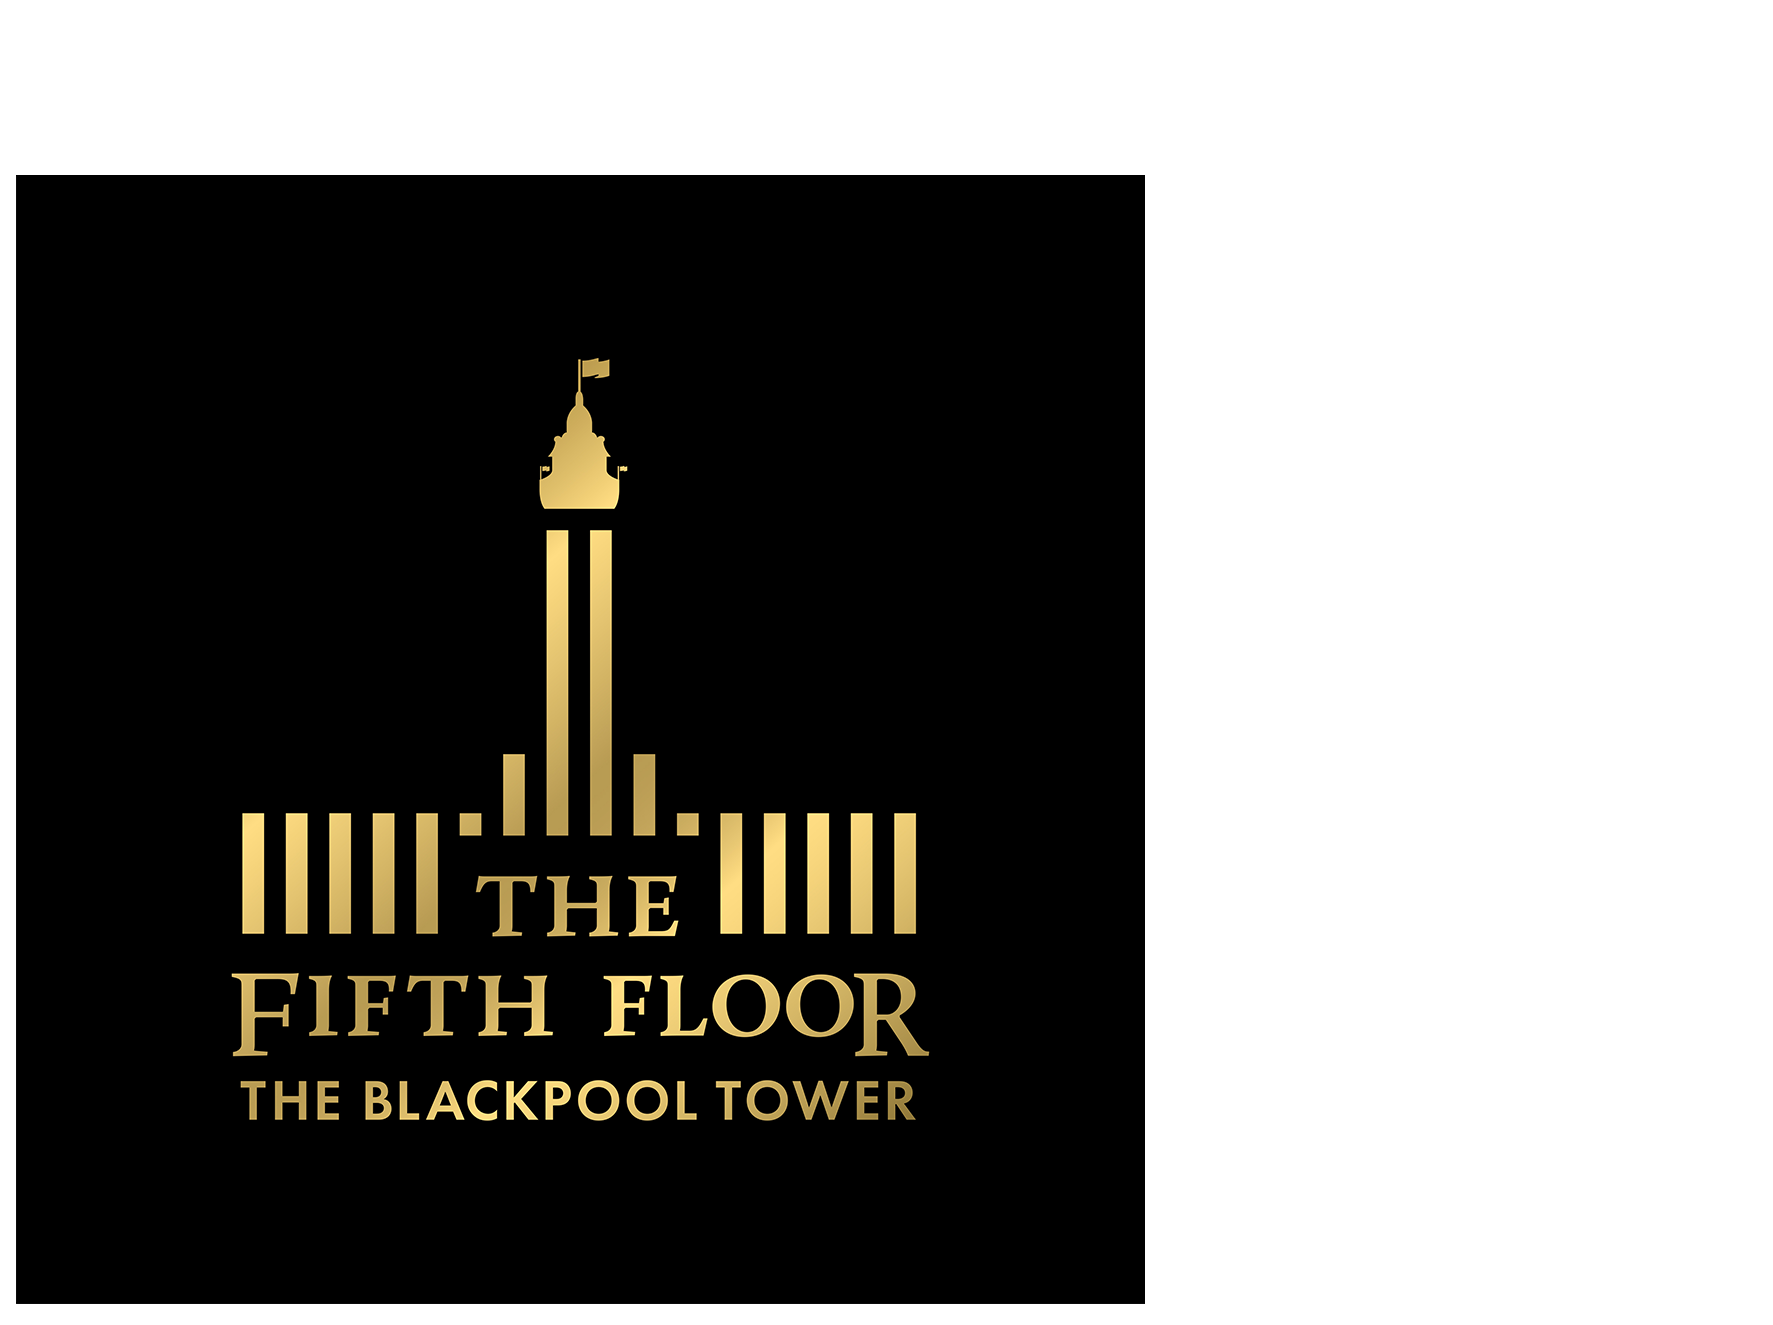 Fifth Floor